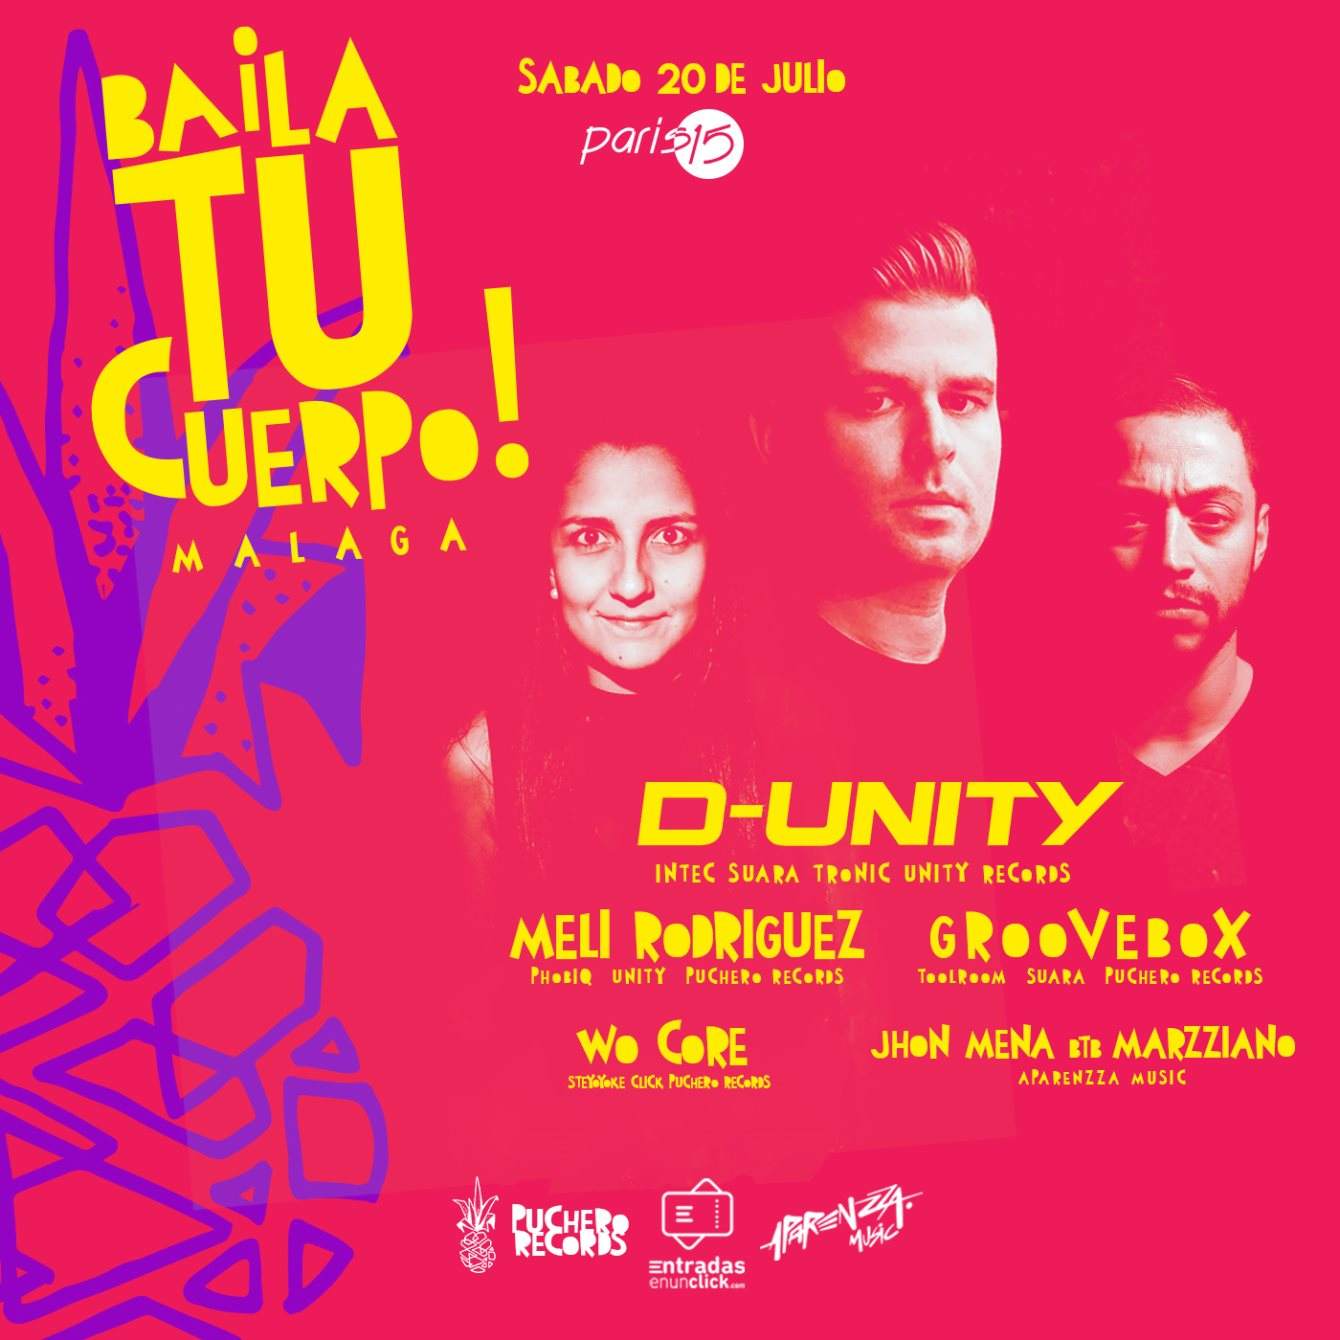 Baila Tu Cuerpo! feat. D-Unity at Paris15 Málaga - Página frontal